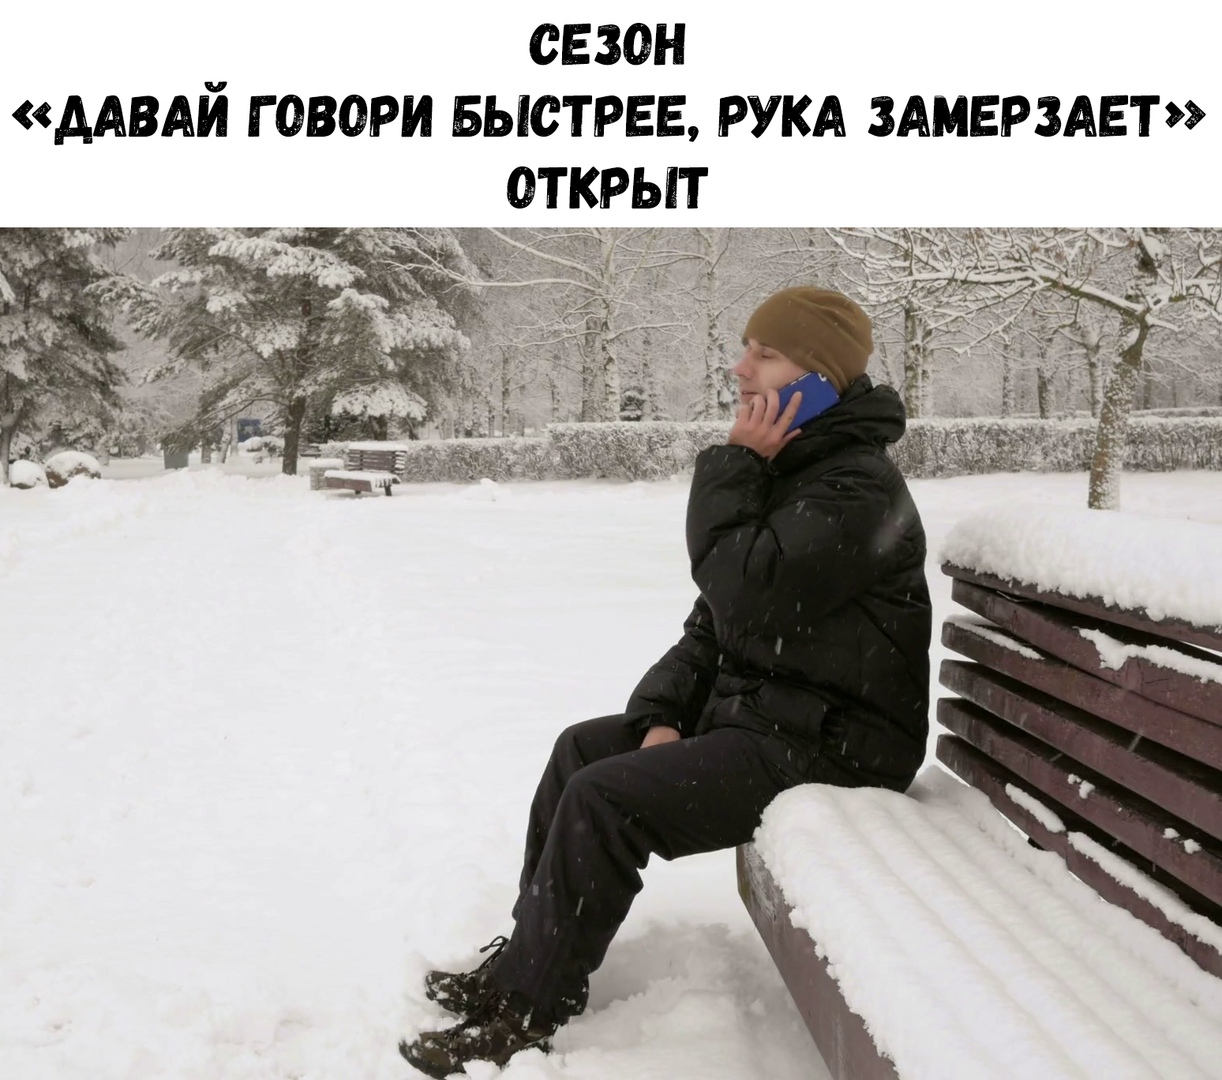 Давай говори быстренько. Человек сидит на снегу. Человек сидит зимой. Человек сидит в сугробе. Человек в куртке сидит на снегу.